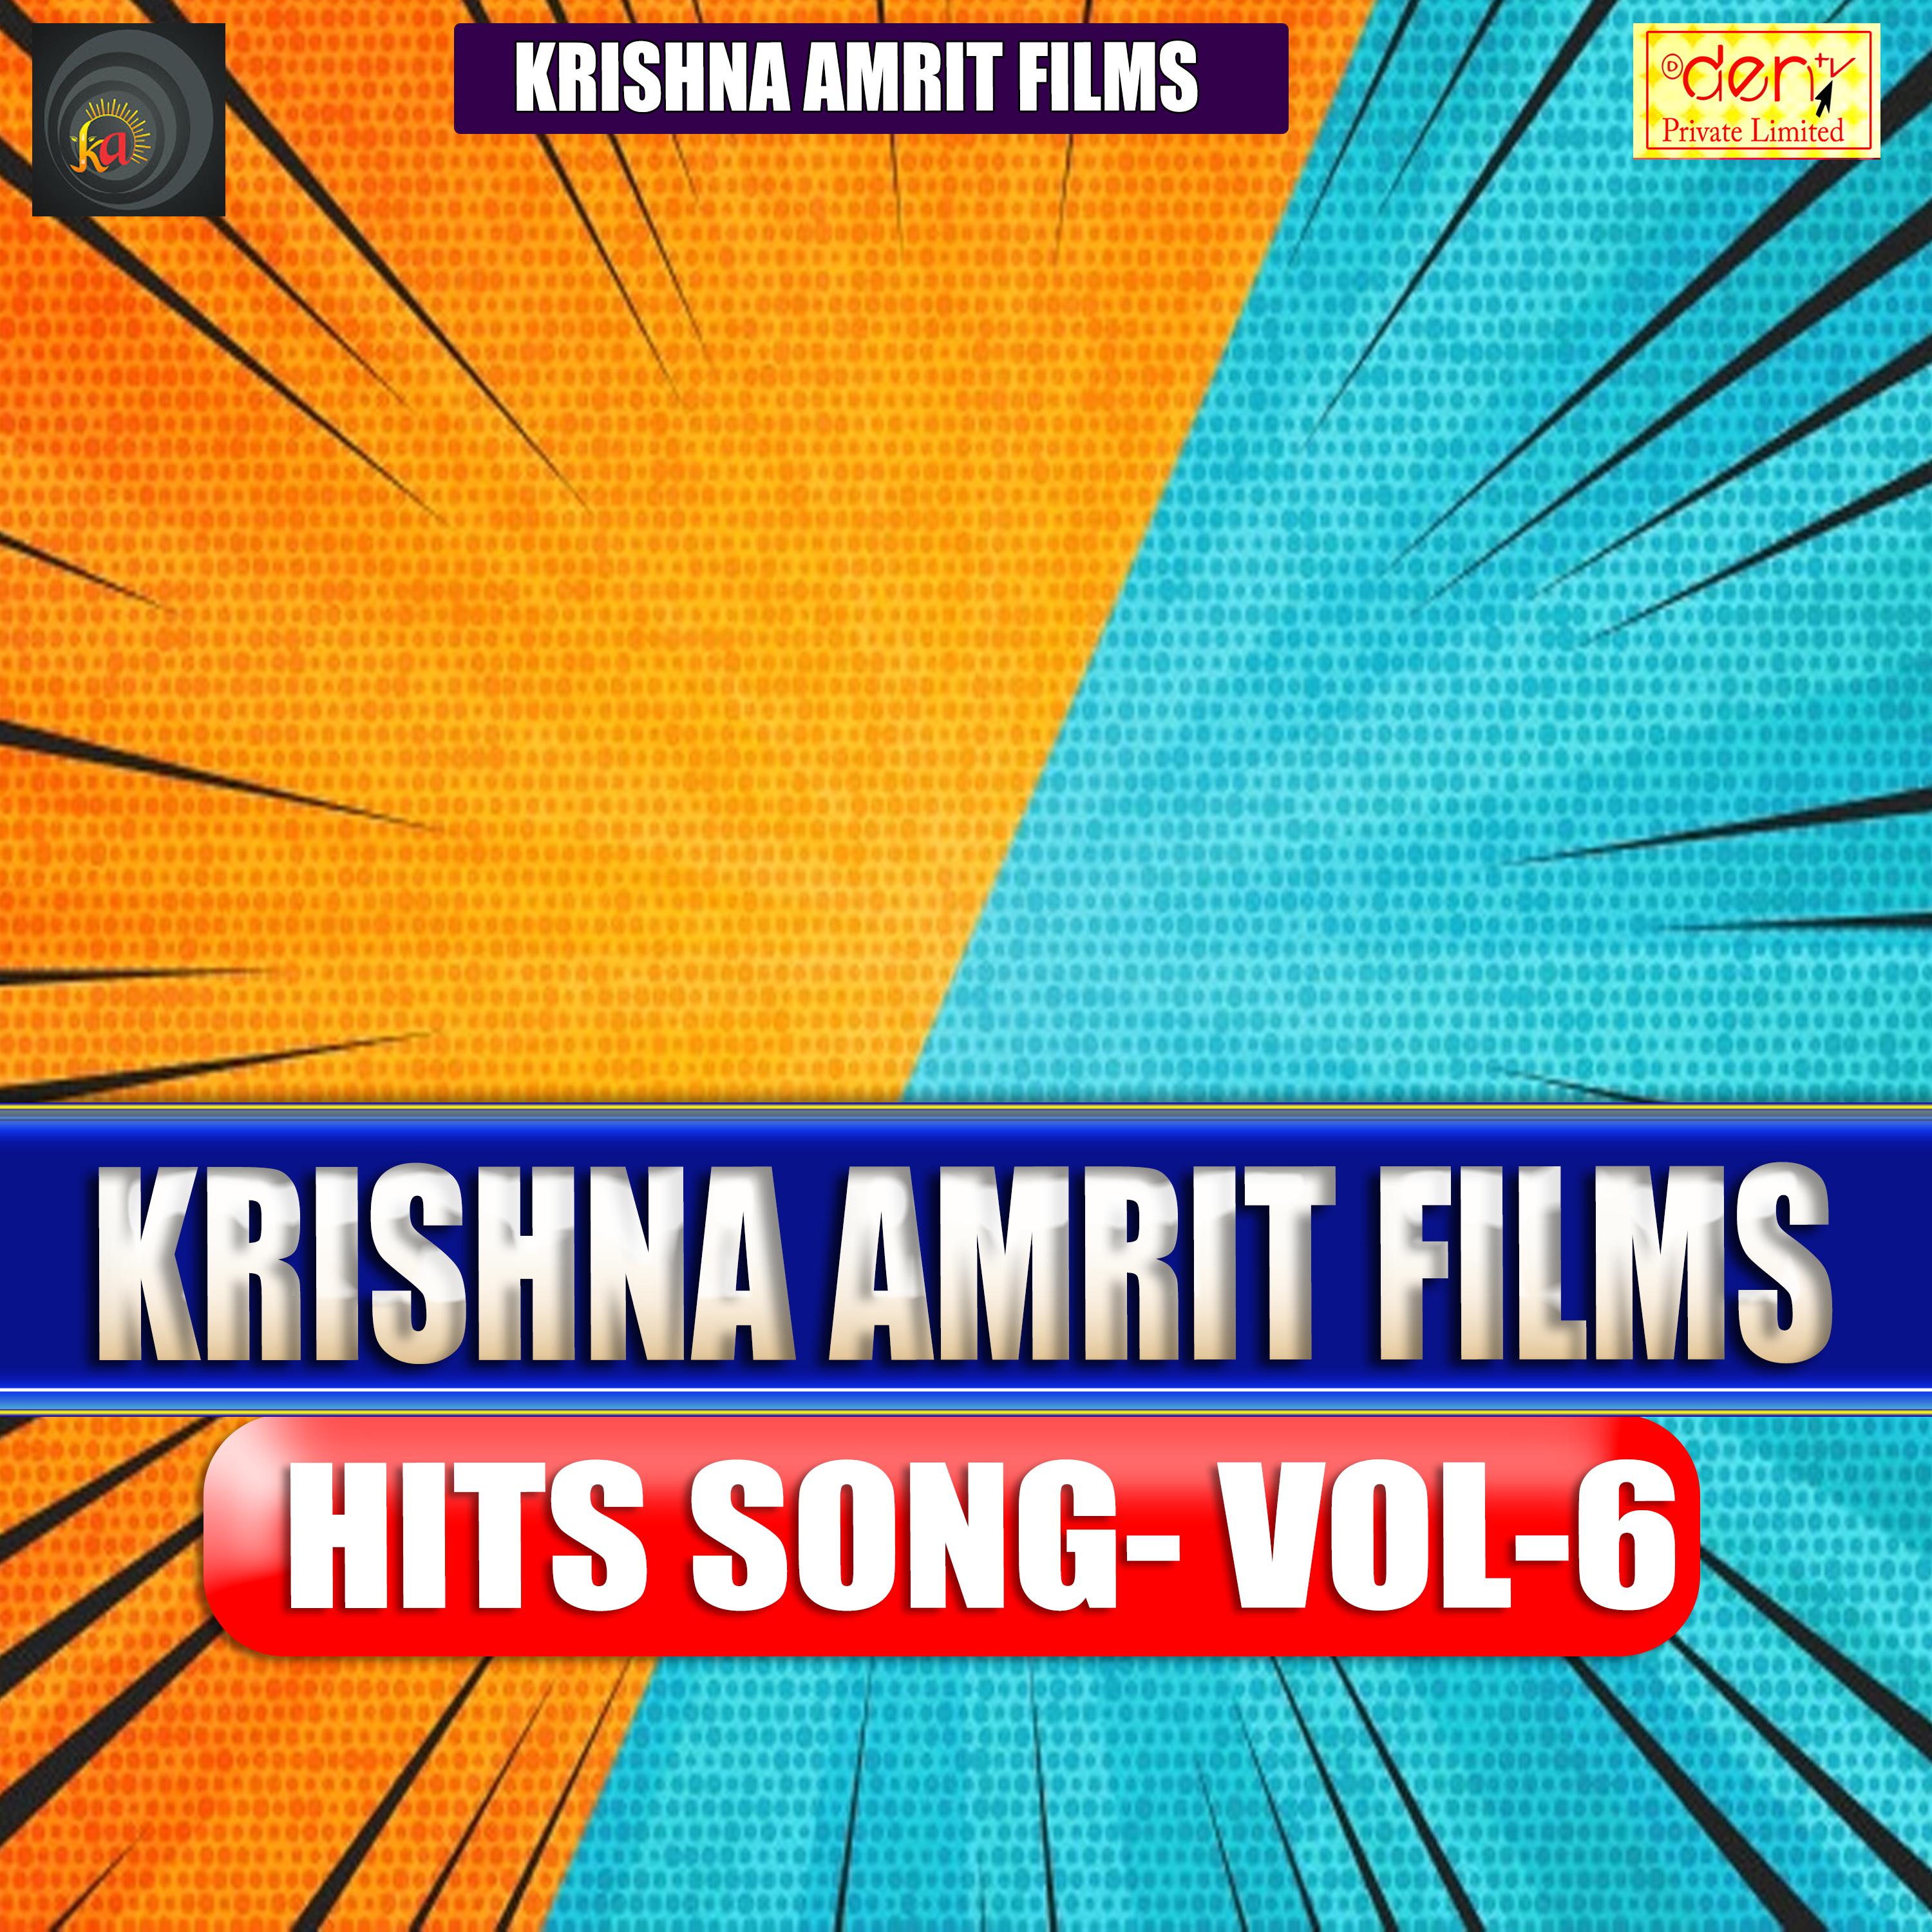 Krishna Amrit Films Hits Vol - 6